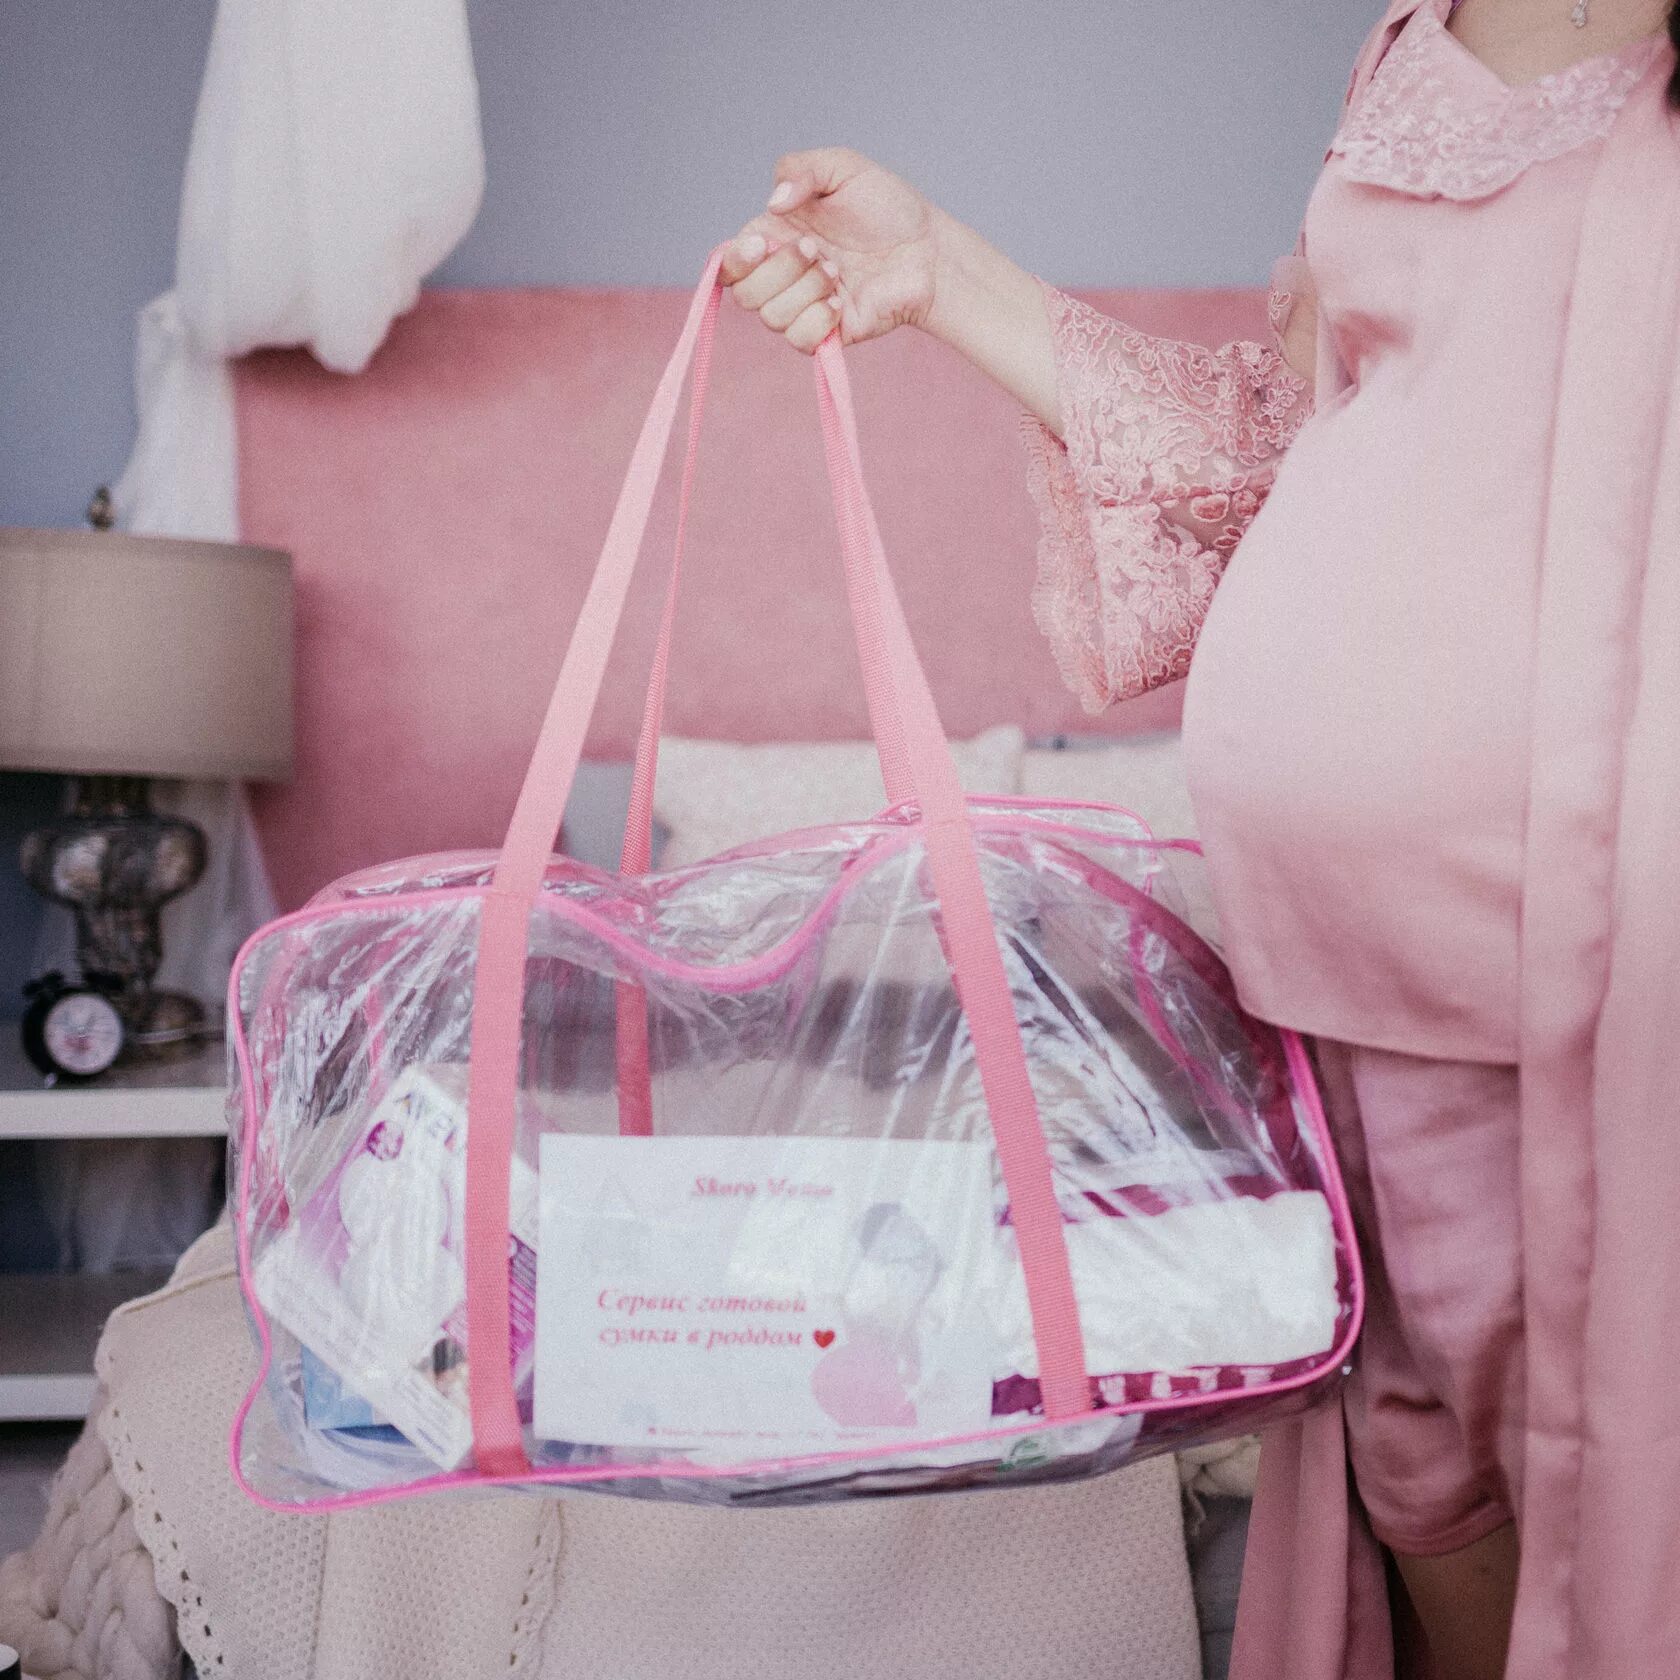 Сумка в роддом. Красивые сумки в роддом. Сумка для родов. Сумка для беременных в роддом.